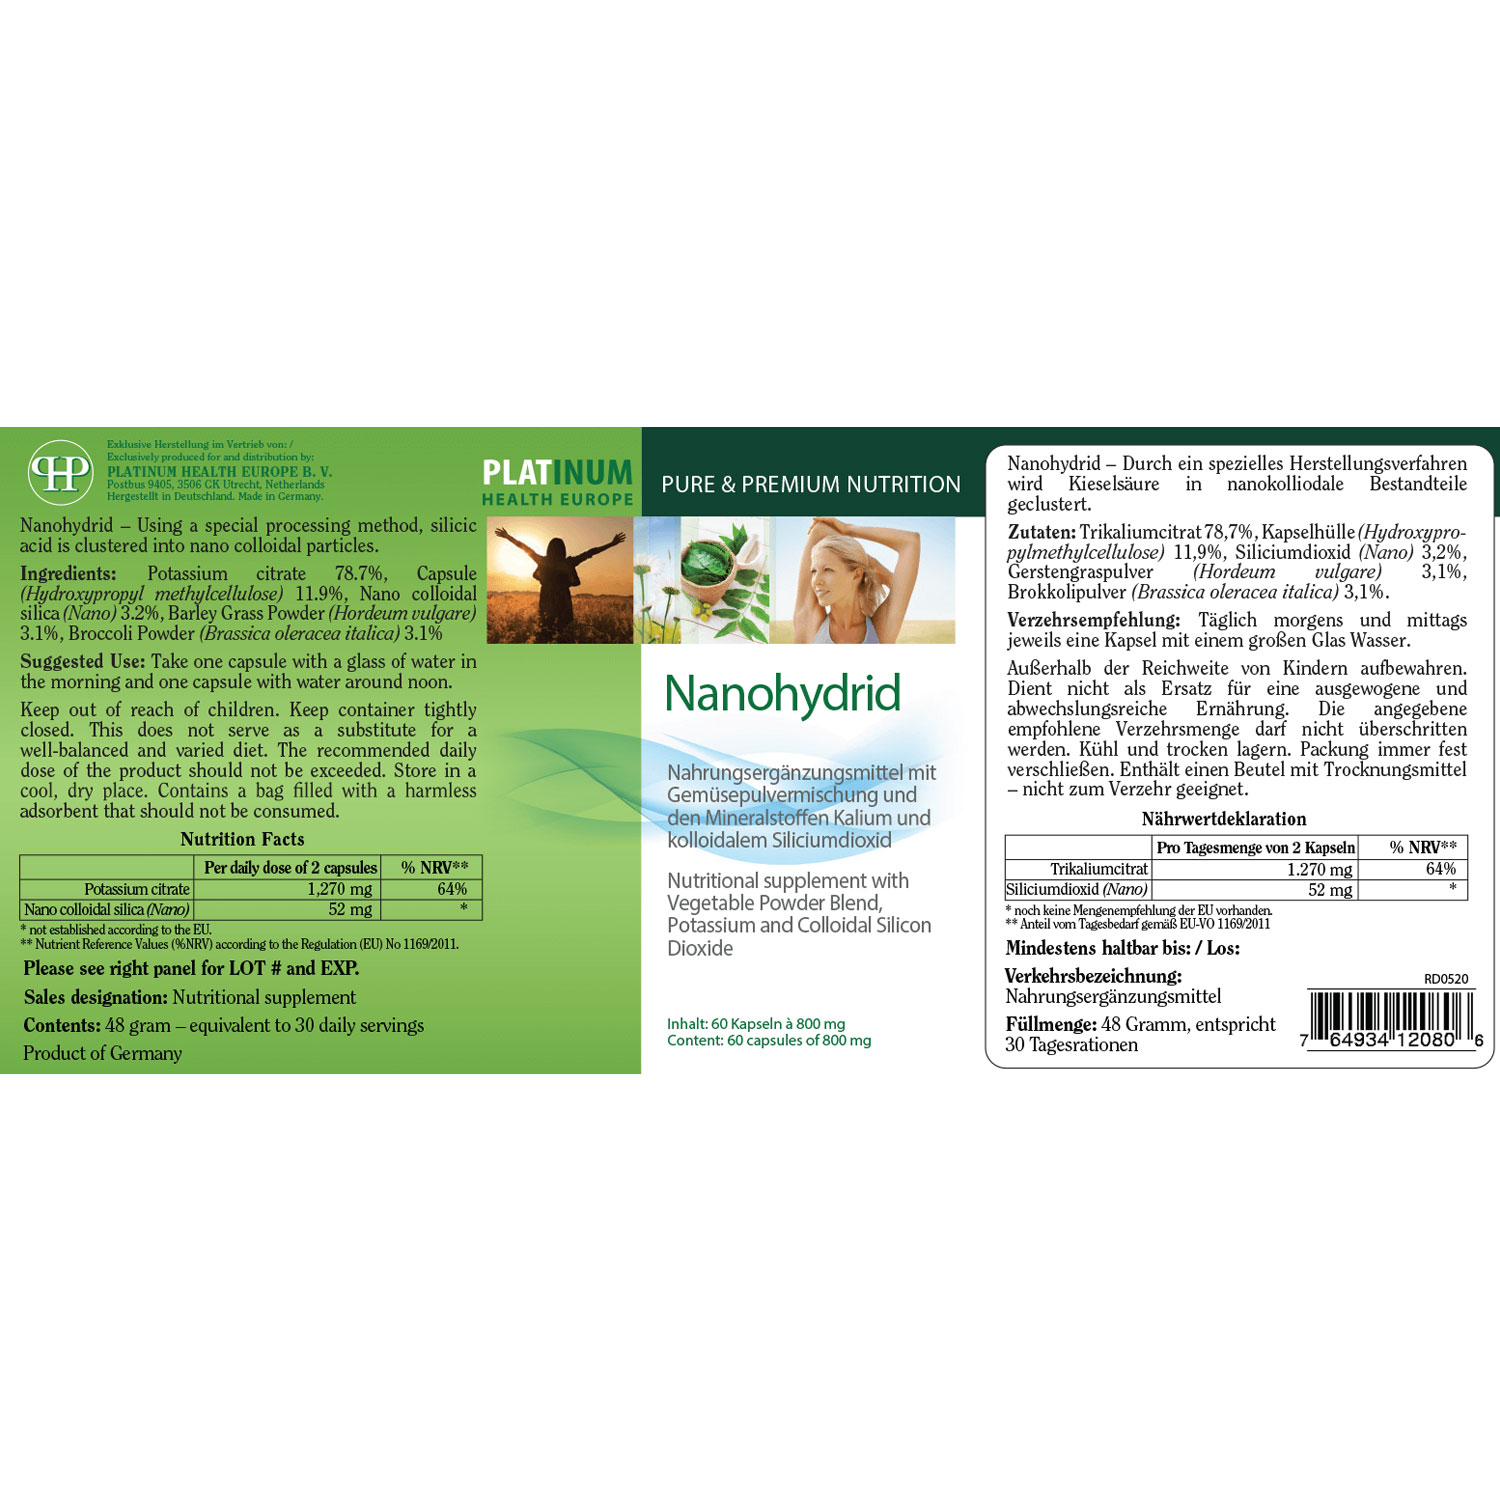 Nanohdrid von Platinum Health - Etikett